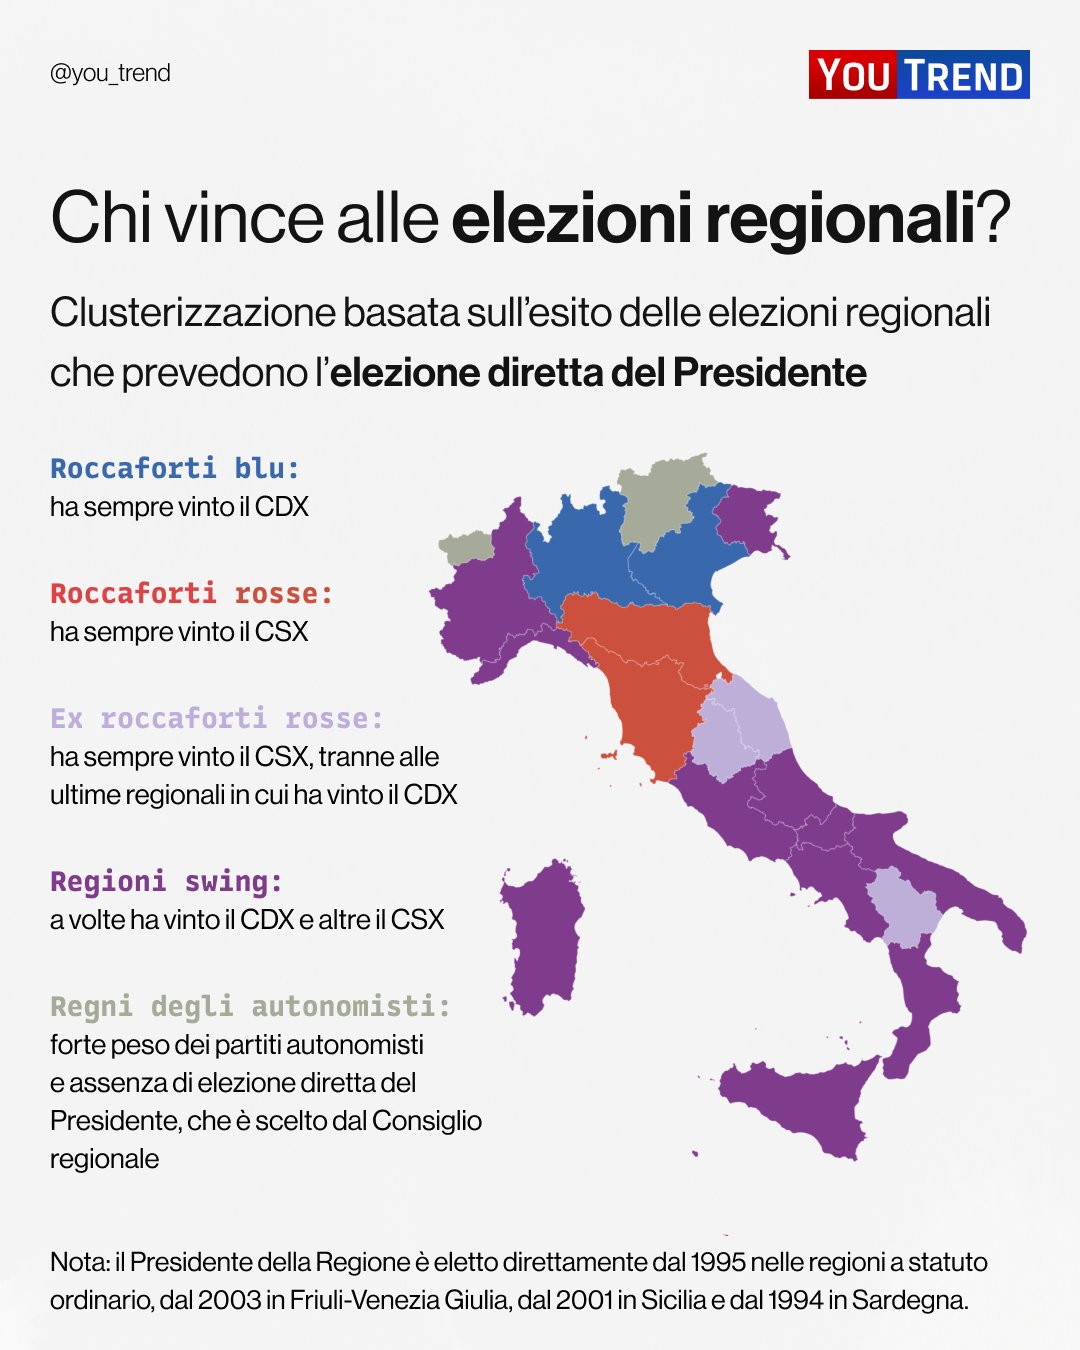 Carta dell’Italia divisa in regioni colorate diversamente: 1 Roccaforti blu – ha sempre vinto il CDX; Roccaforti rosse – ha sempre vinto il CSX; 3 Ex roccaforti rosse (lilla) – ha sempre vinto il CSX, tranne alle ultime regionali in cui ha vinto il CDX; 4 Regioni swing (viola) a volte ha vinto il CDX e altre il CSX; 5 Regni degli autonomisti (grigio) – forte peso dei partiti autonomisti e assenza di elezione diretta del Presidente